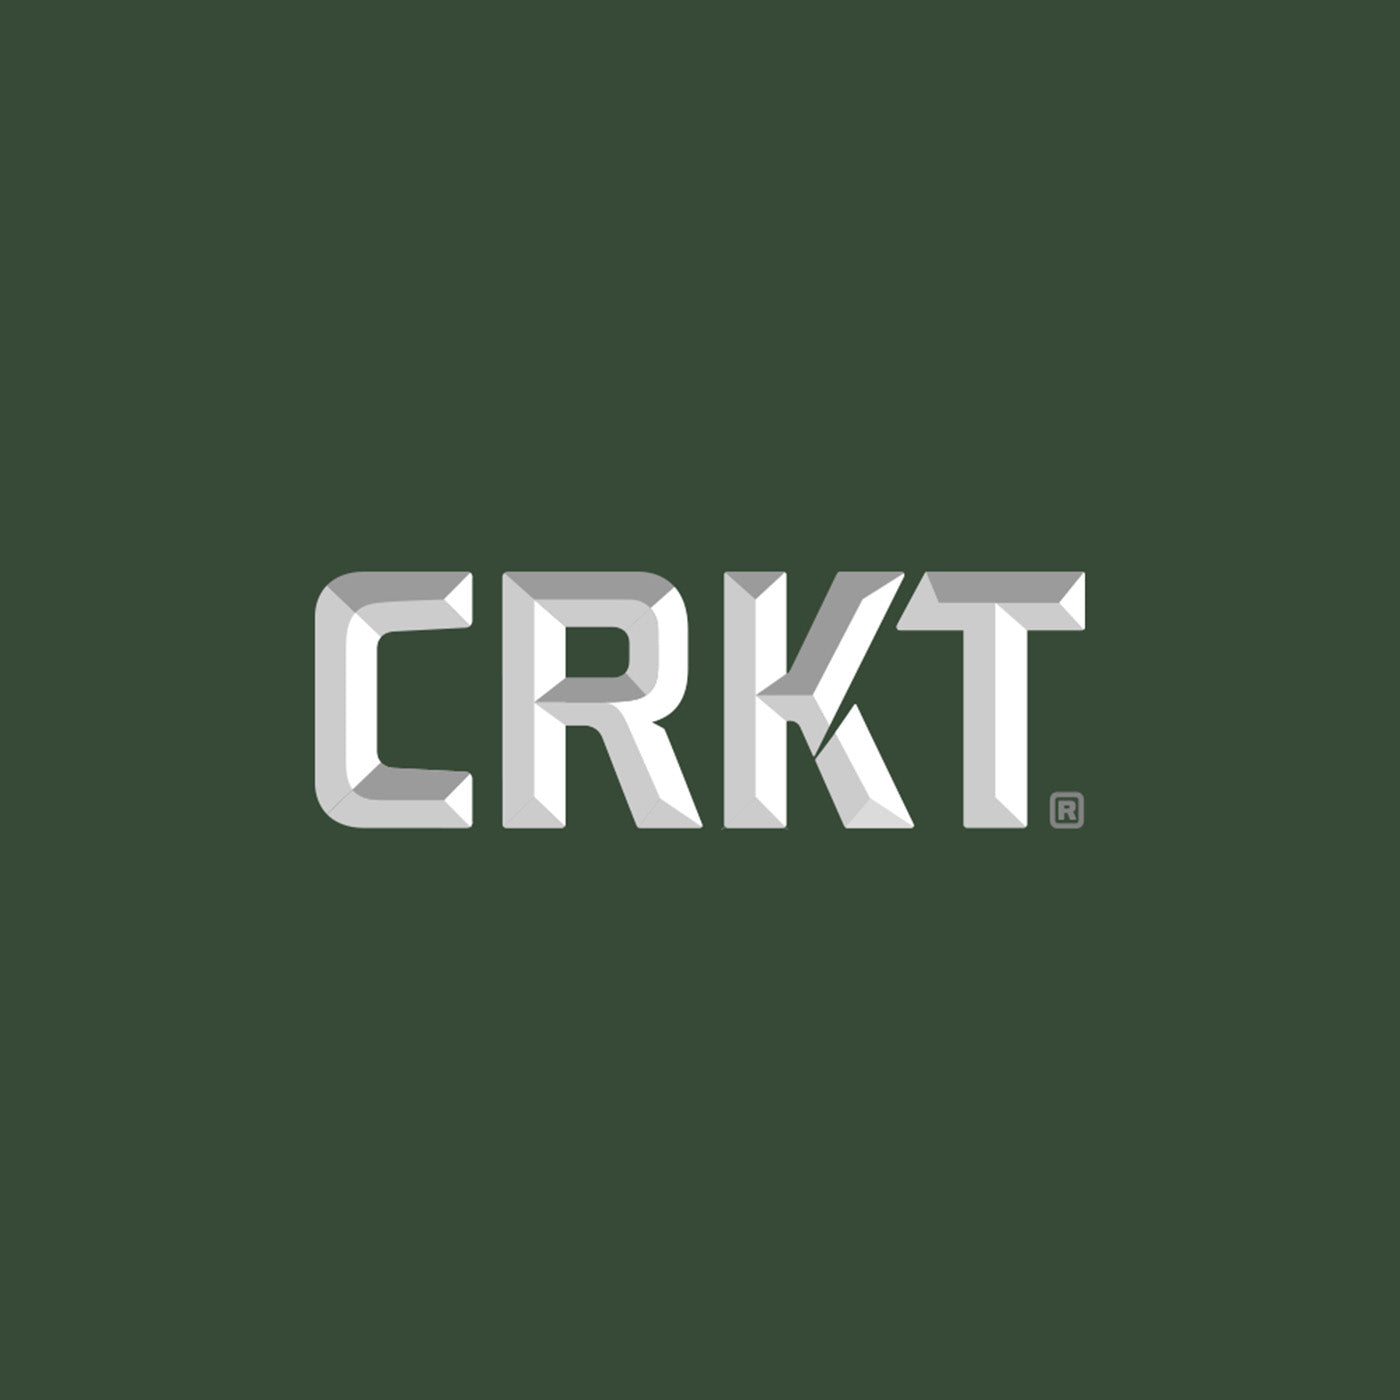 CRKT Logo